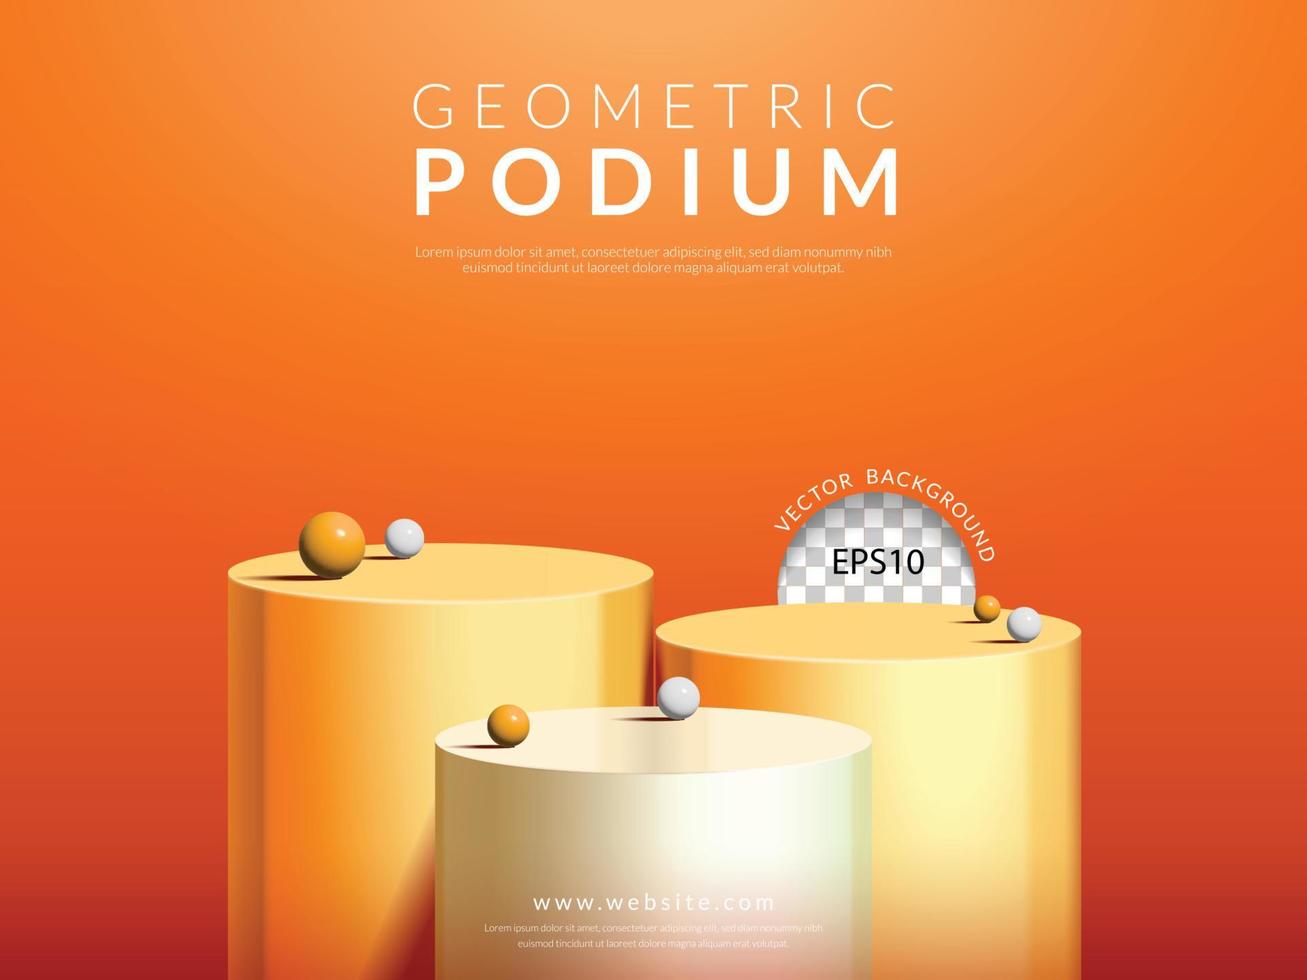 concept d'affichage de produit cosmétique, podium de cylindre orange et blanc en trois étapes sur fond orange, illustration vectorielle vecteur